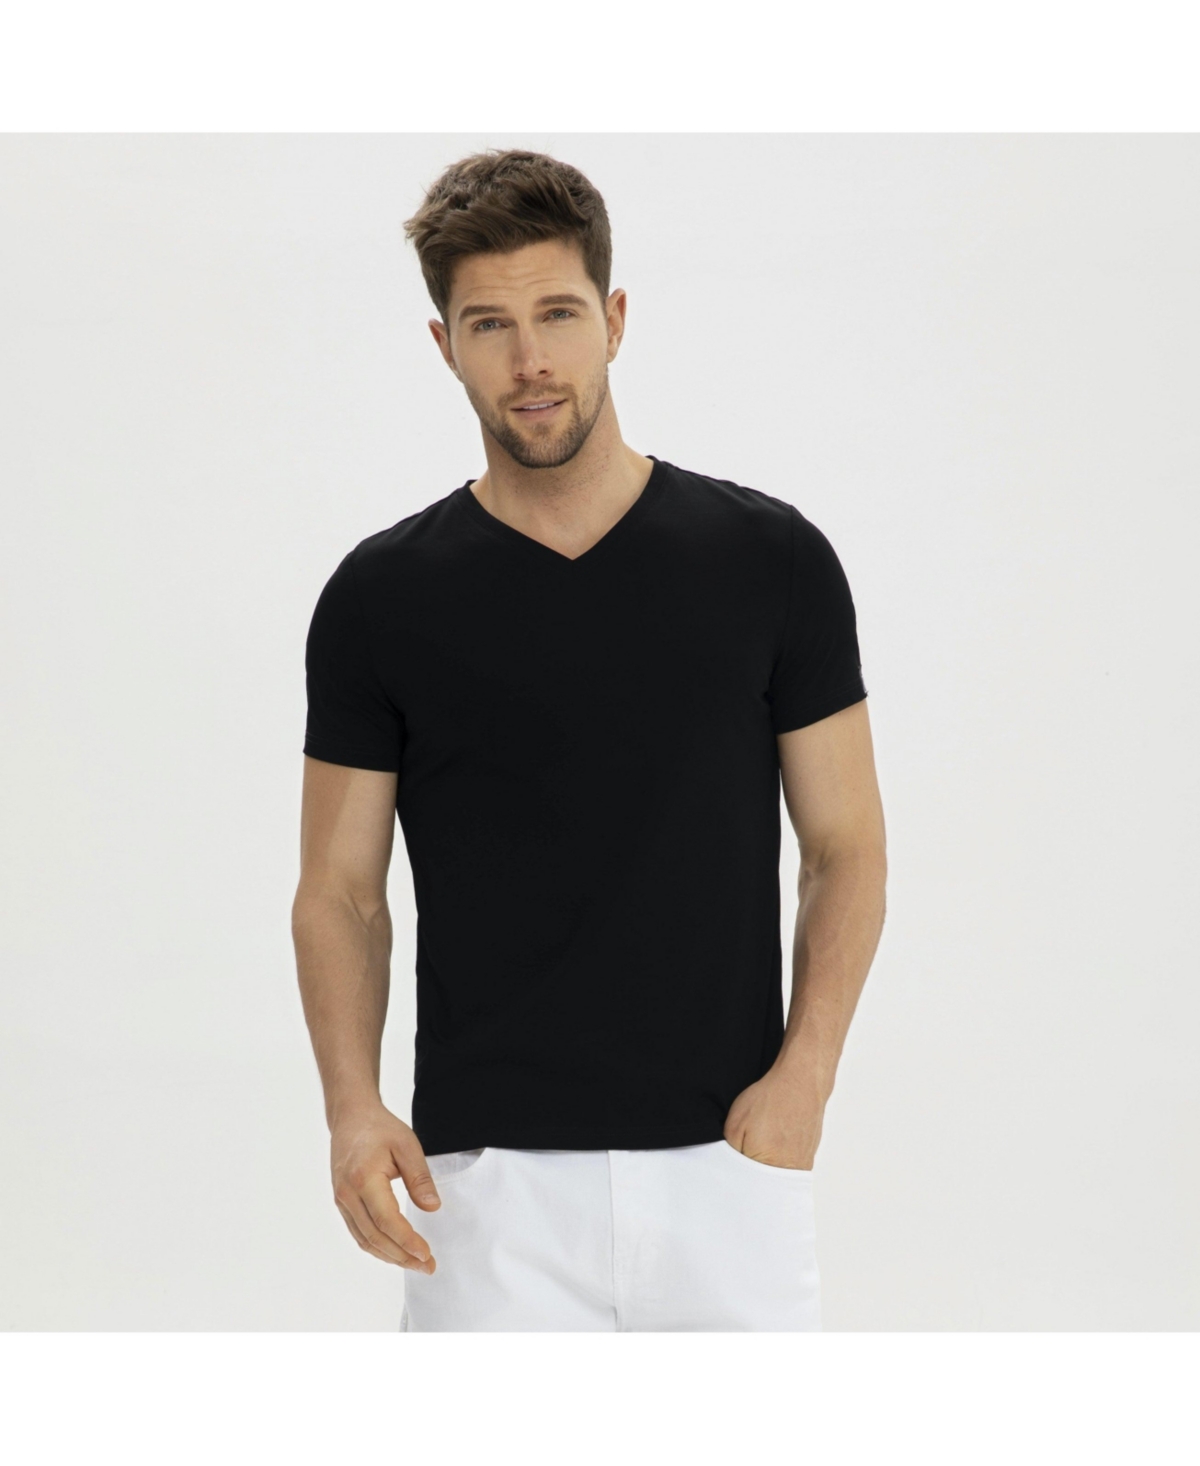 Bellemere Men's Grand V-Neck Mercerized Cotton T-Shirt - White